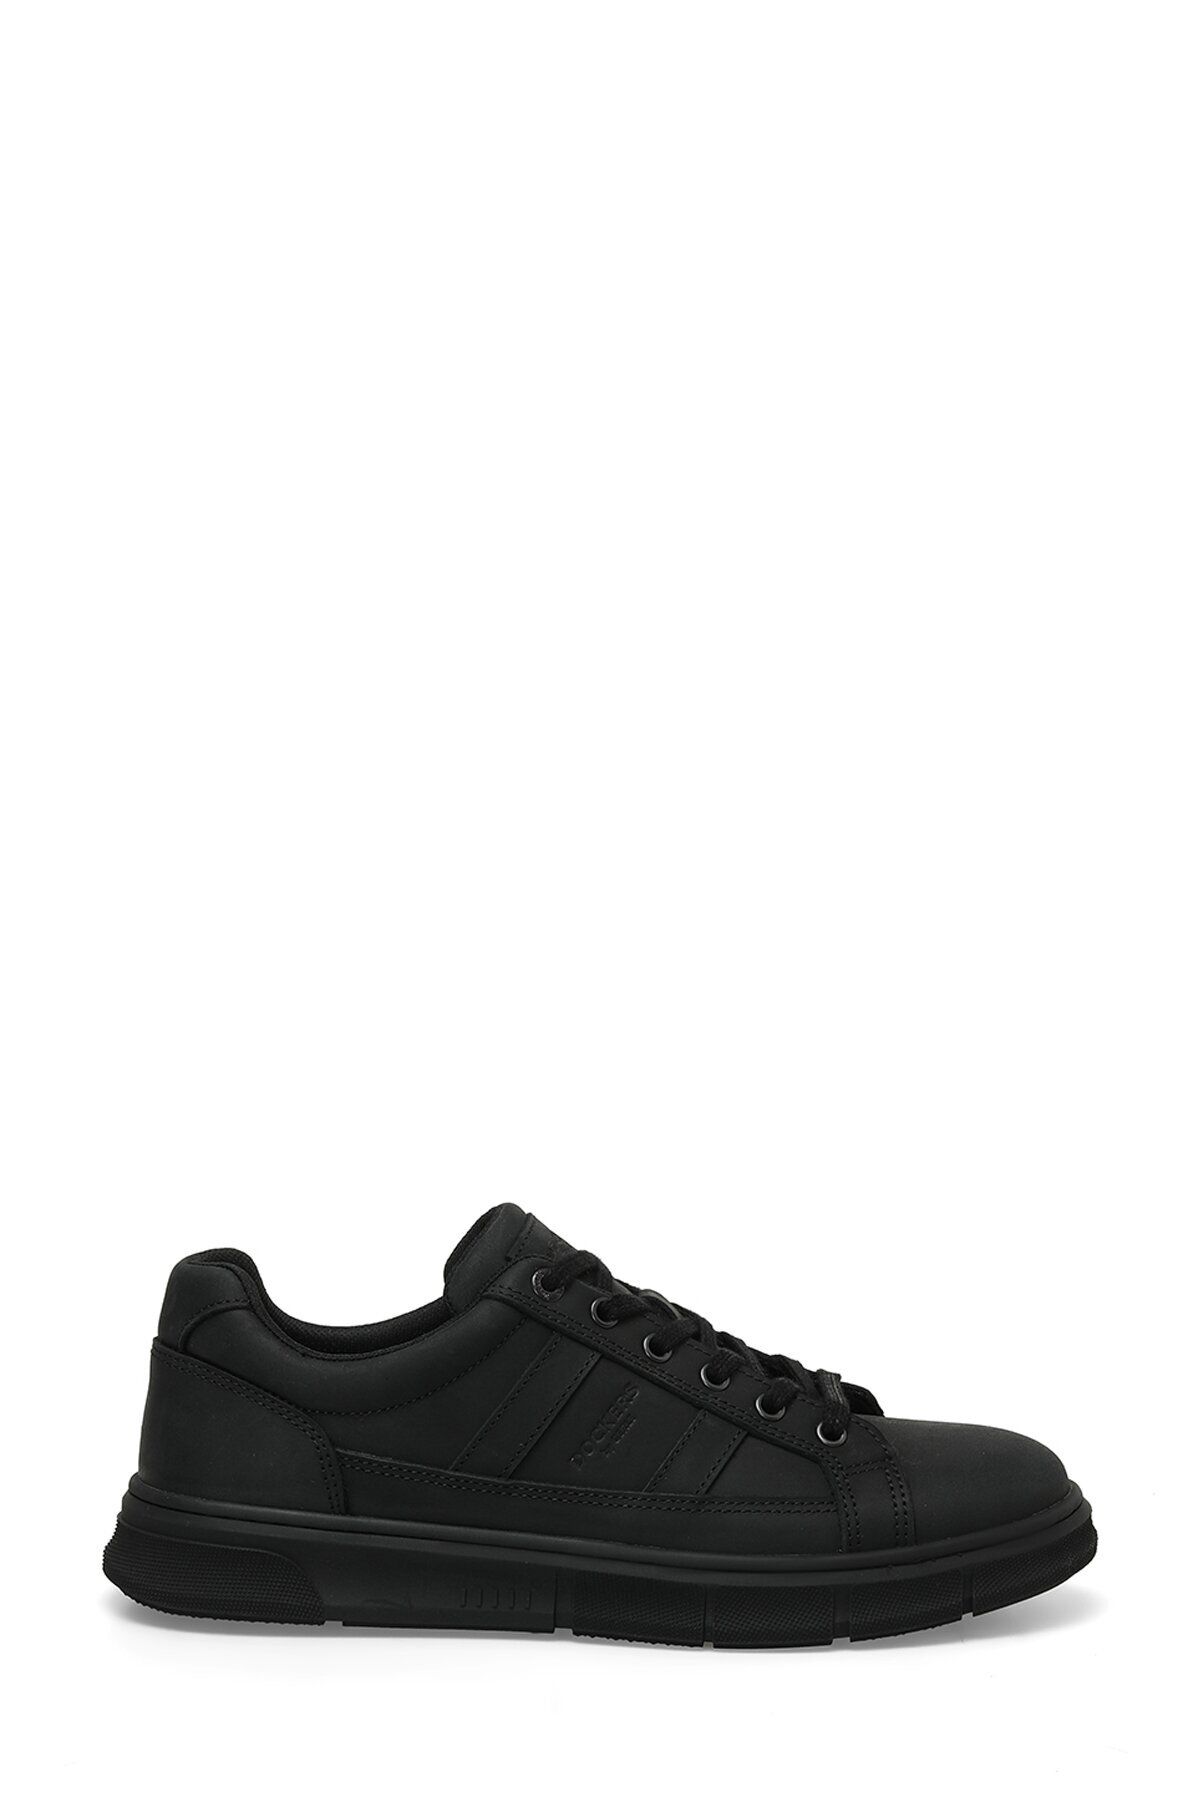 Dockers Deri Siyah Erkek Günlük Ayakkabı 3F 235096 3PR